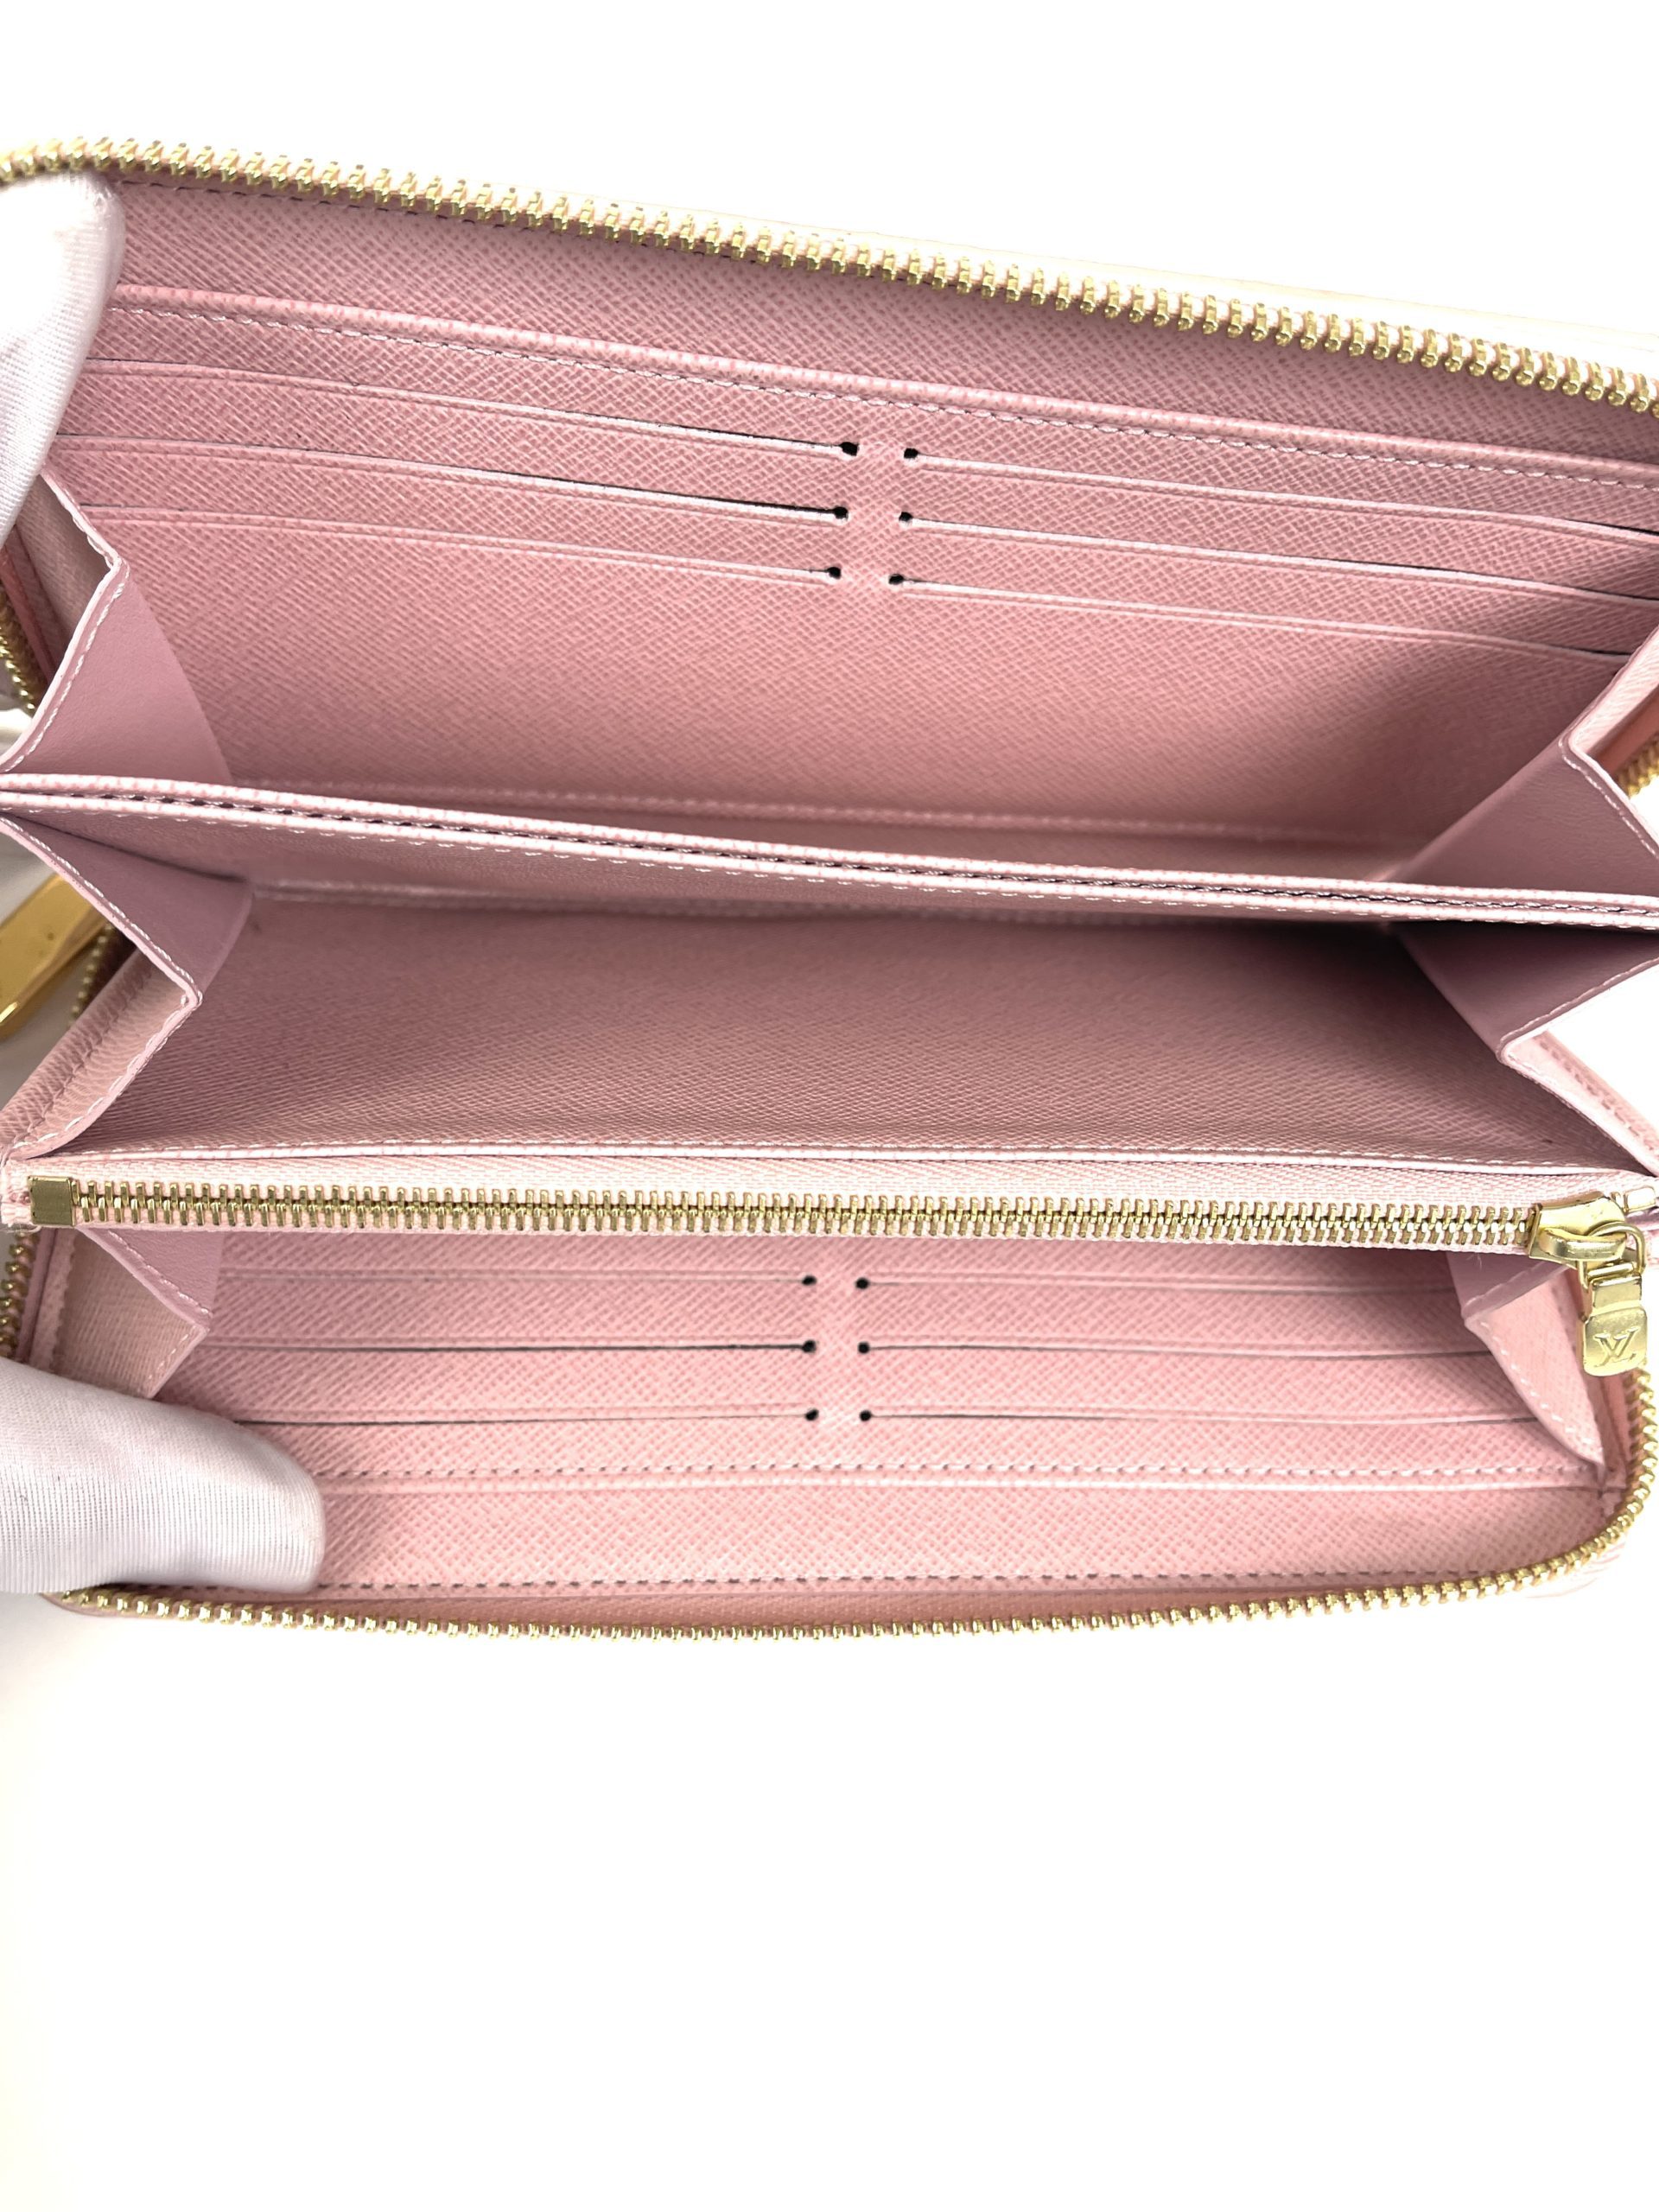 Louis Vuitton Azur Zippy Wallet with Rose Ballerine Interior - A